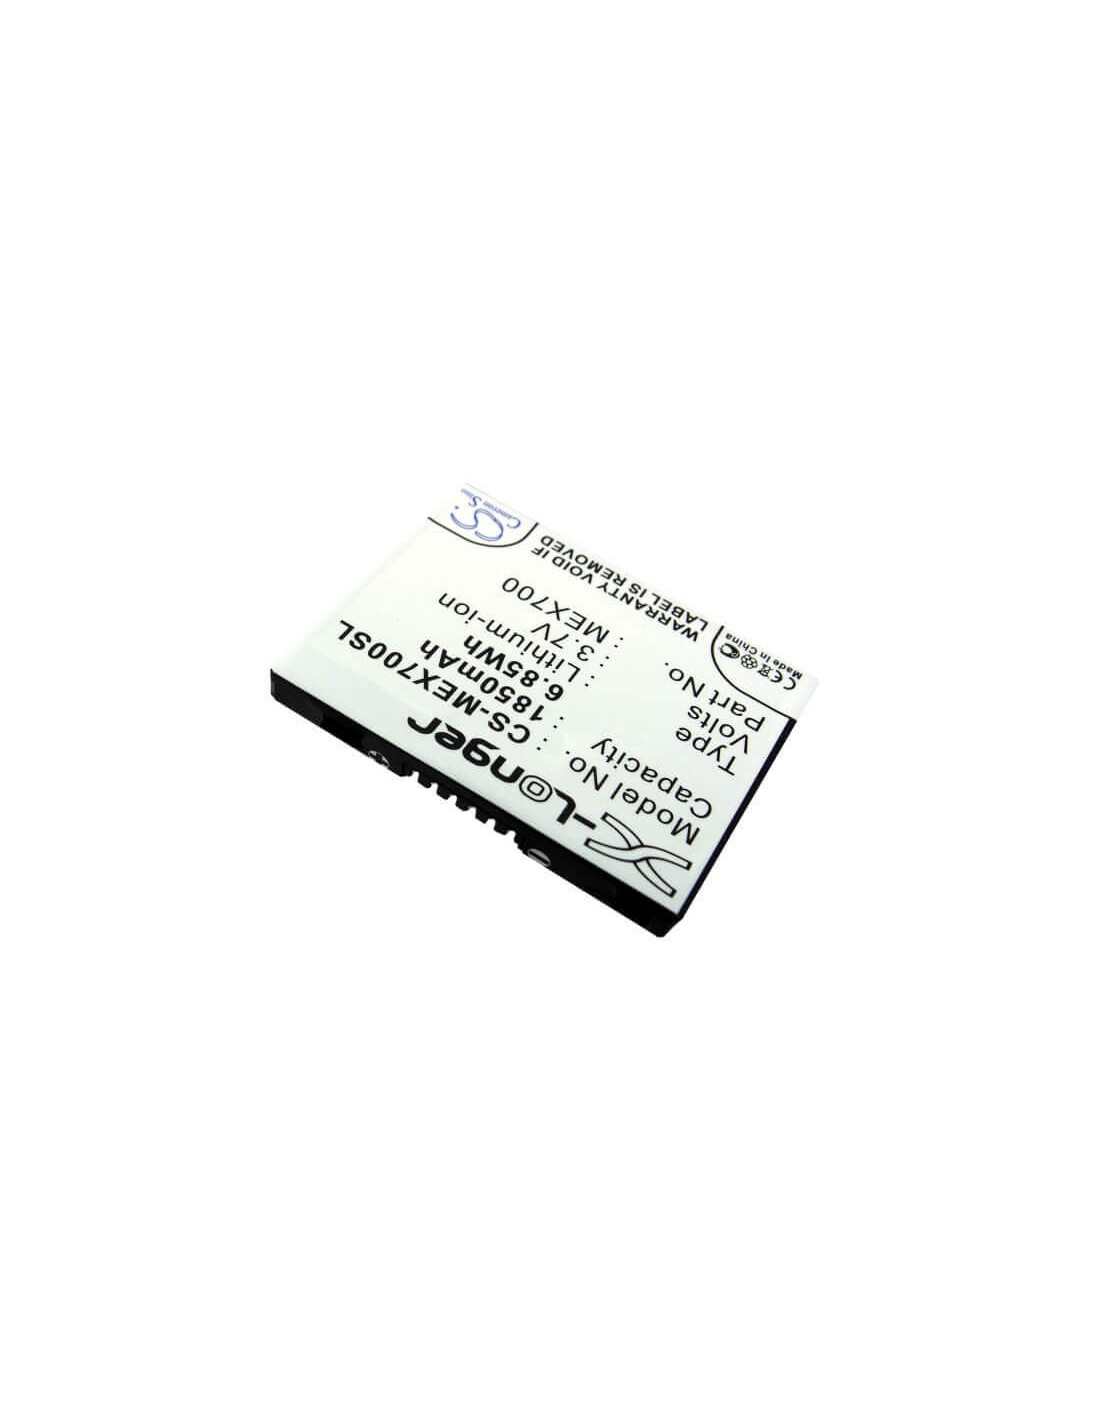 Battery for Motorola LEX 700 3.7V, 1850mAh - 6.85Wh